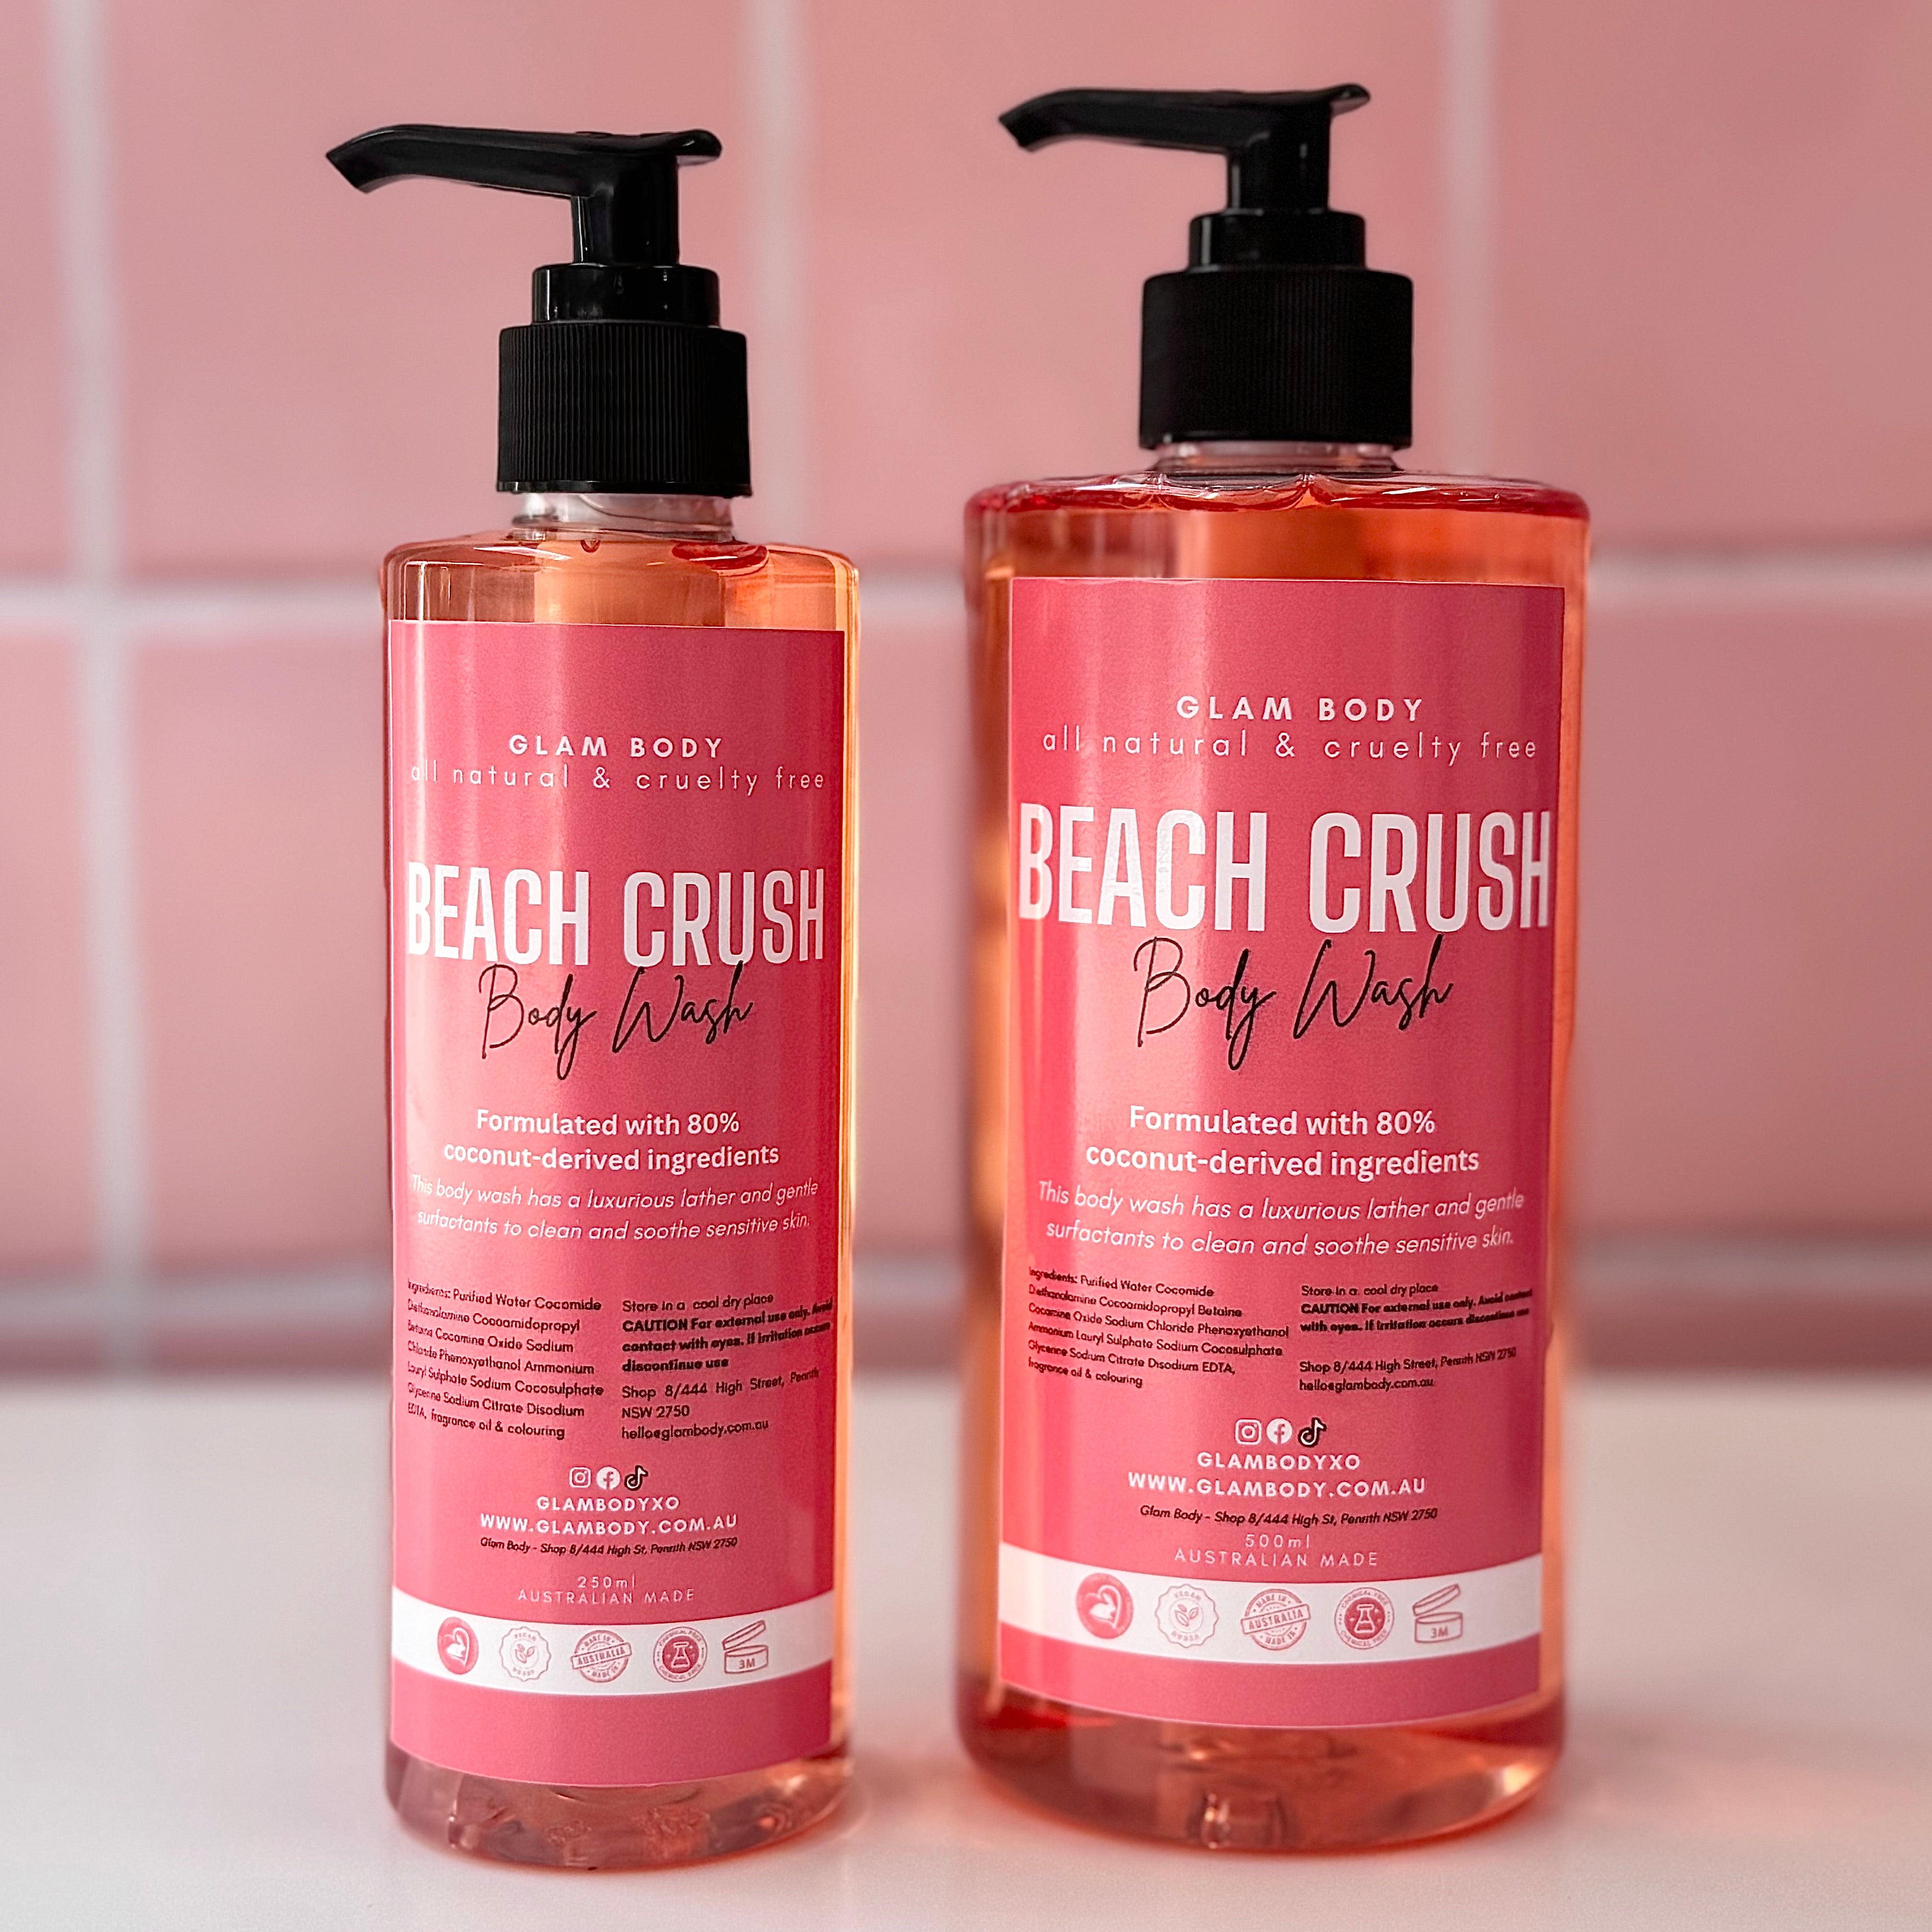 BEACH CRUSH BODY WASH - Glam Body